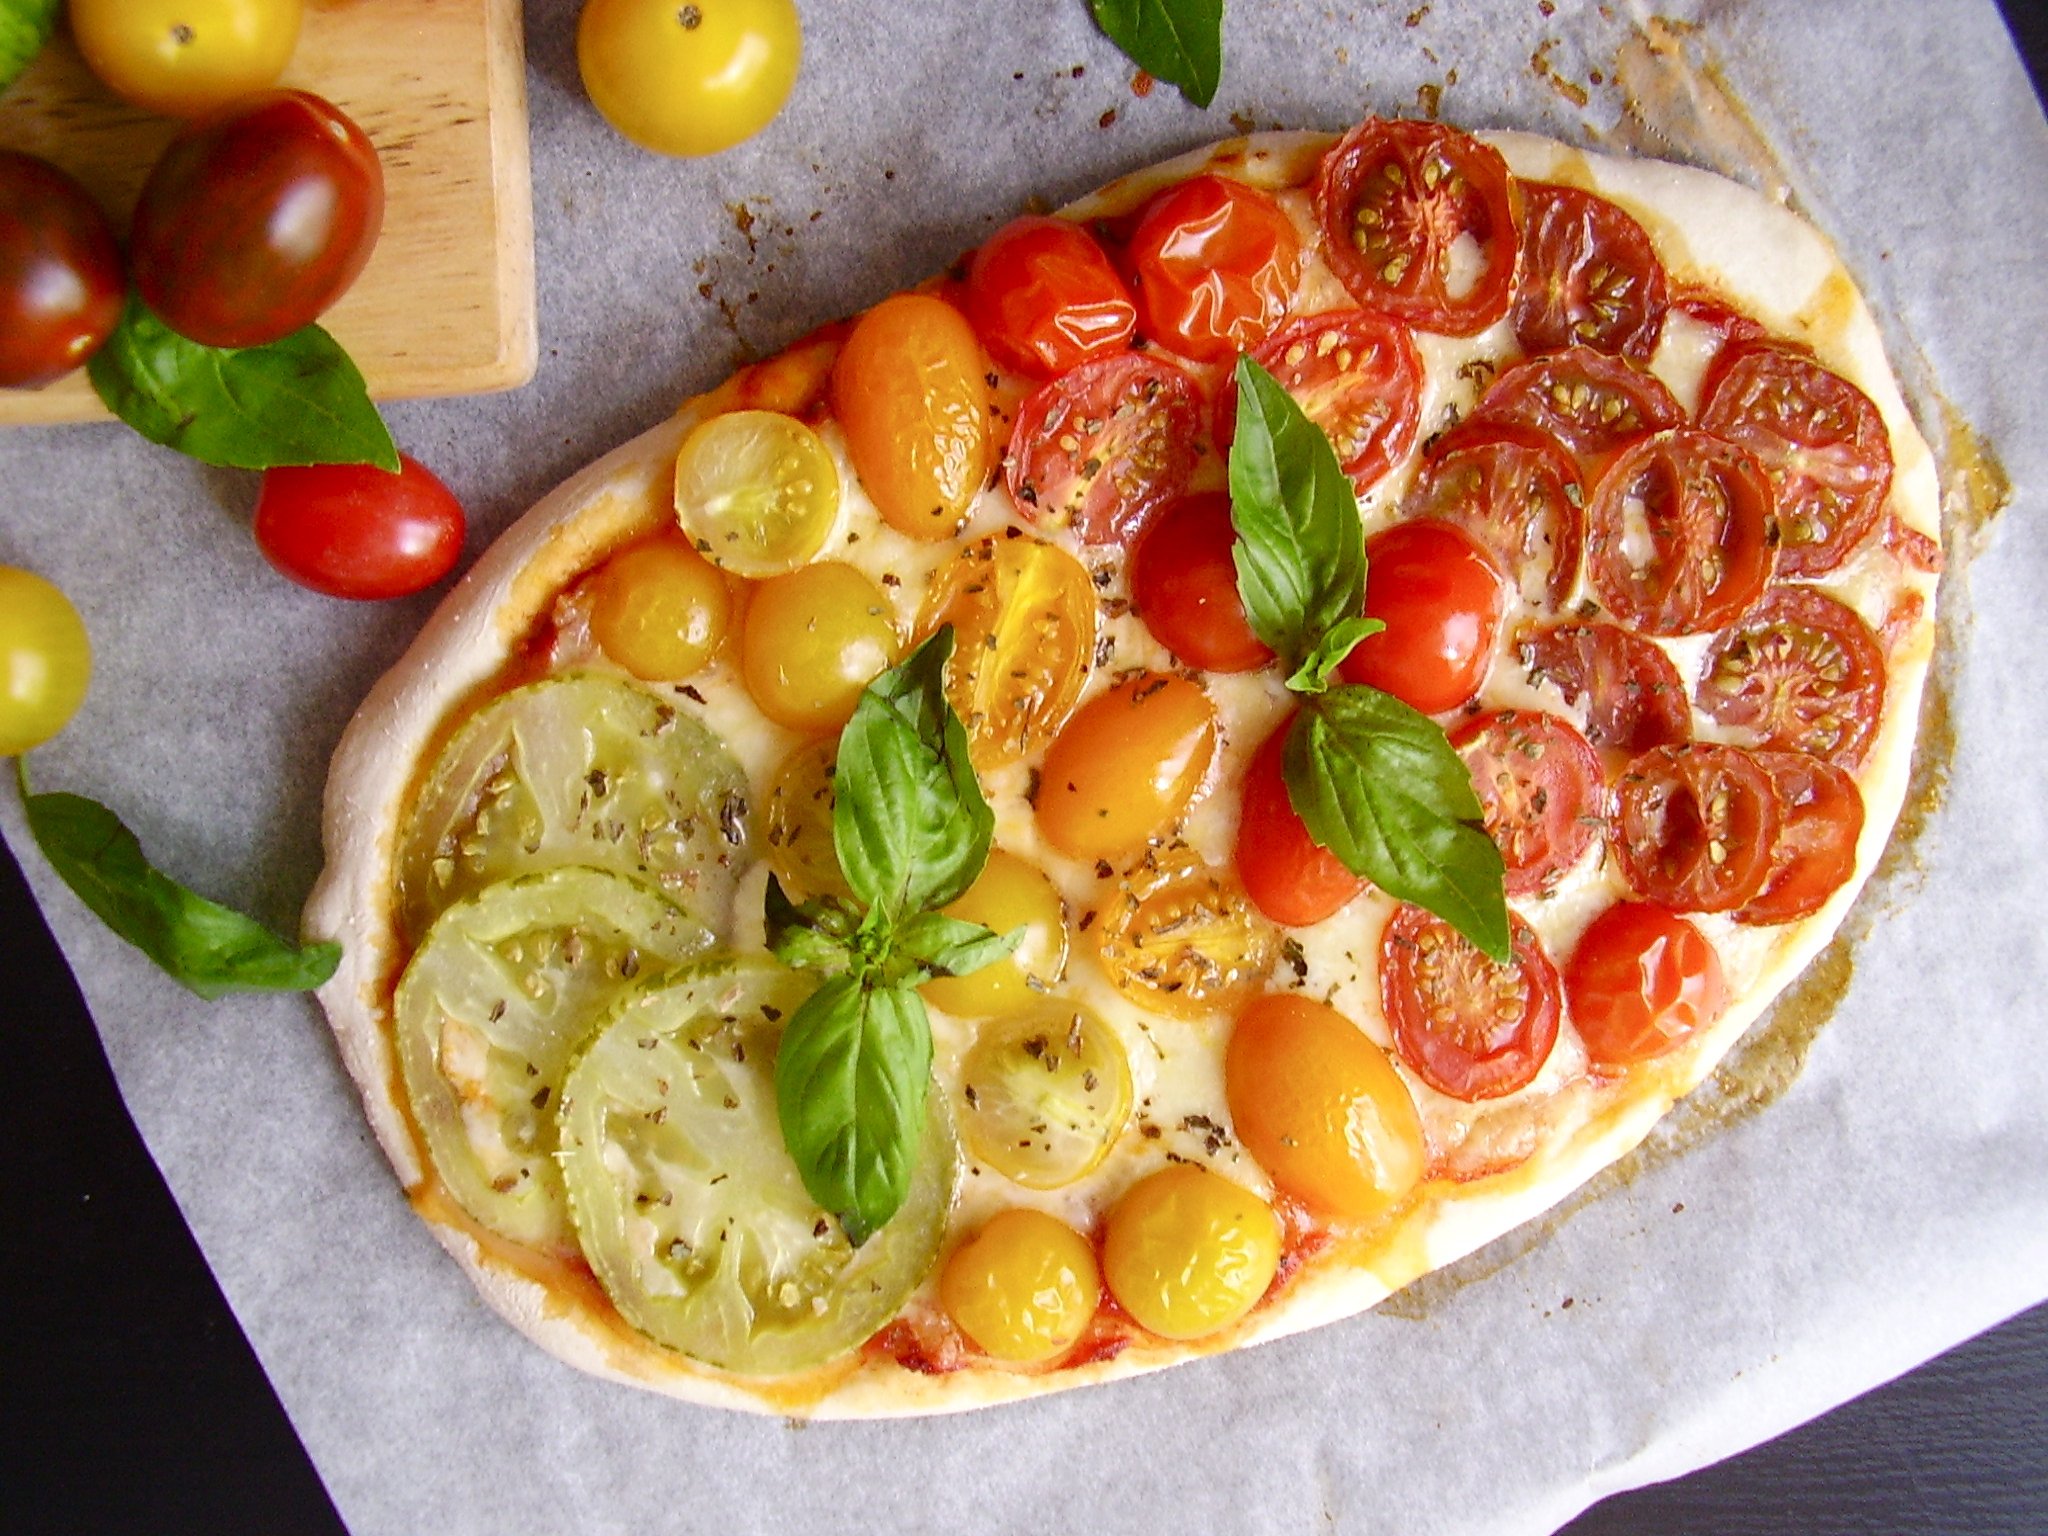 Pizza arc-en-ciel à la tomate